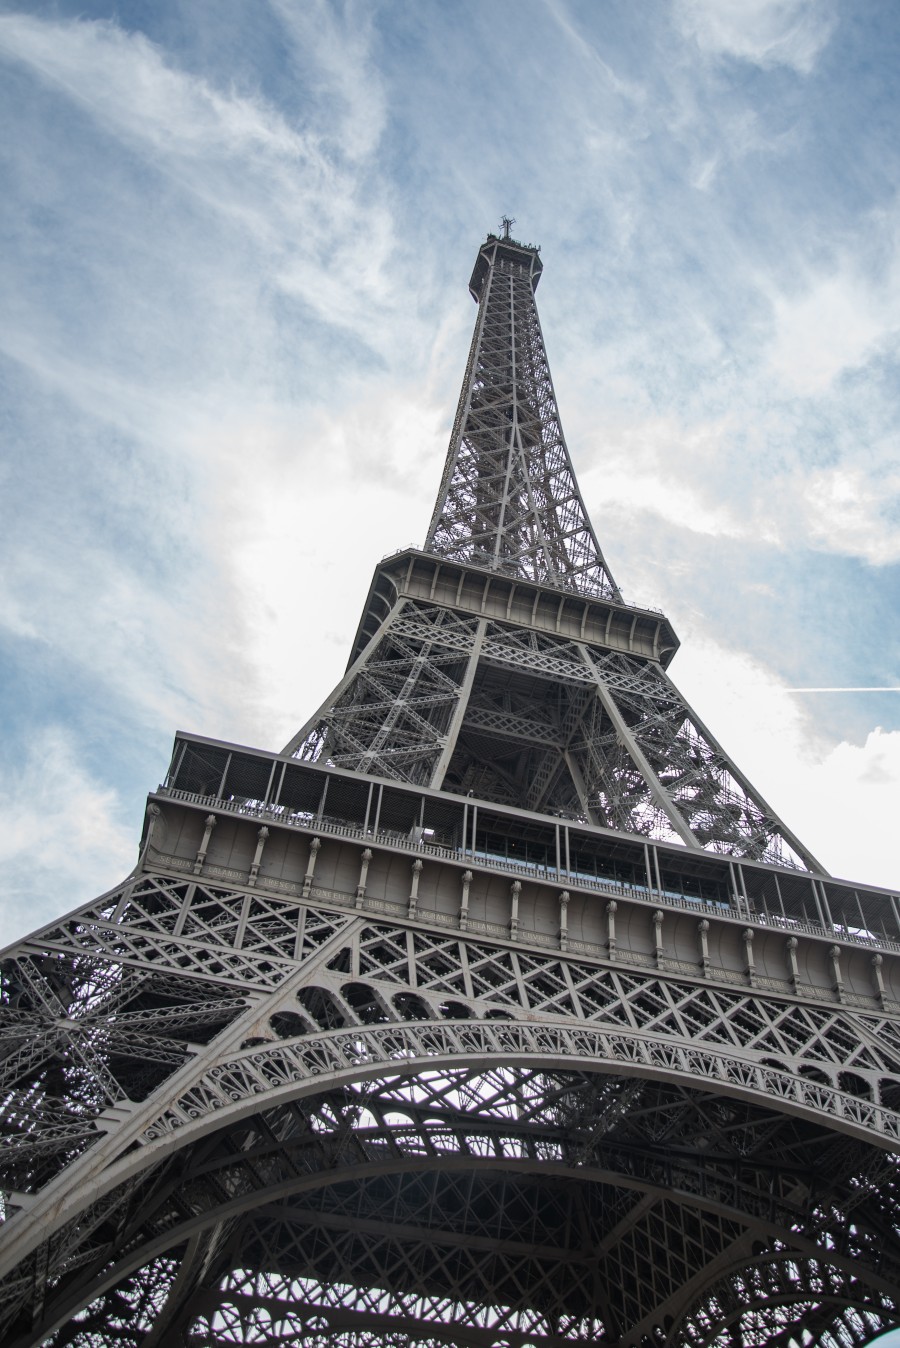 Eiffel tower in Paris